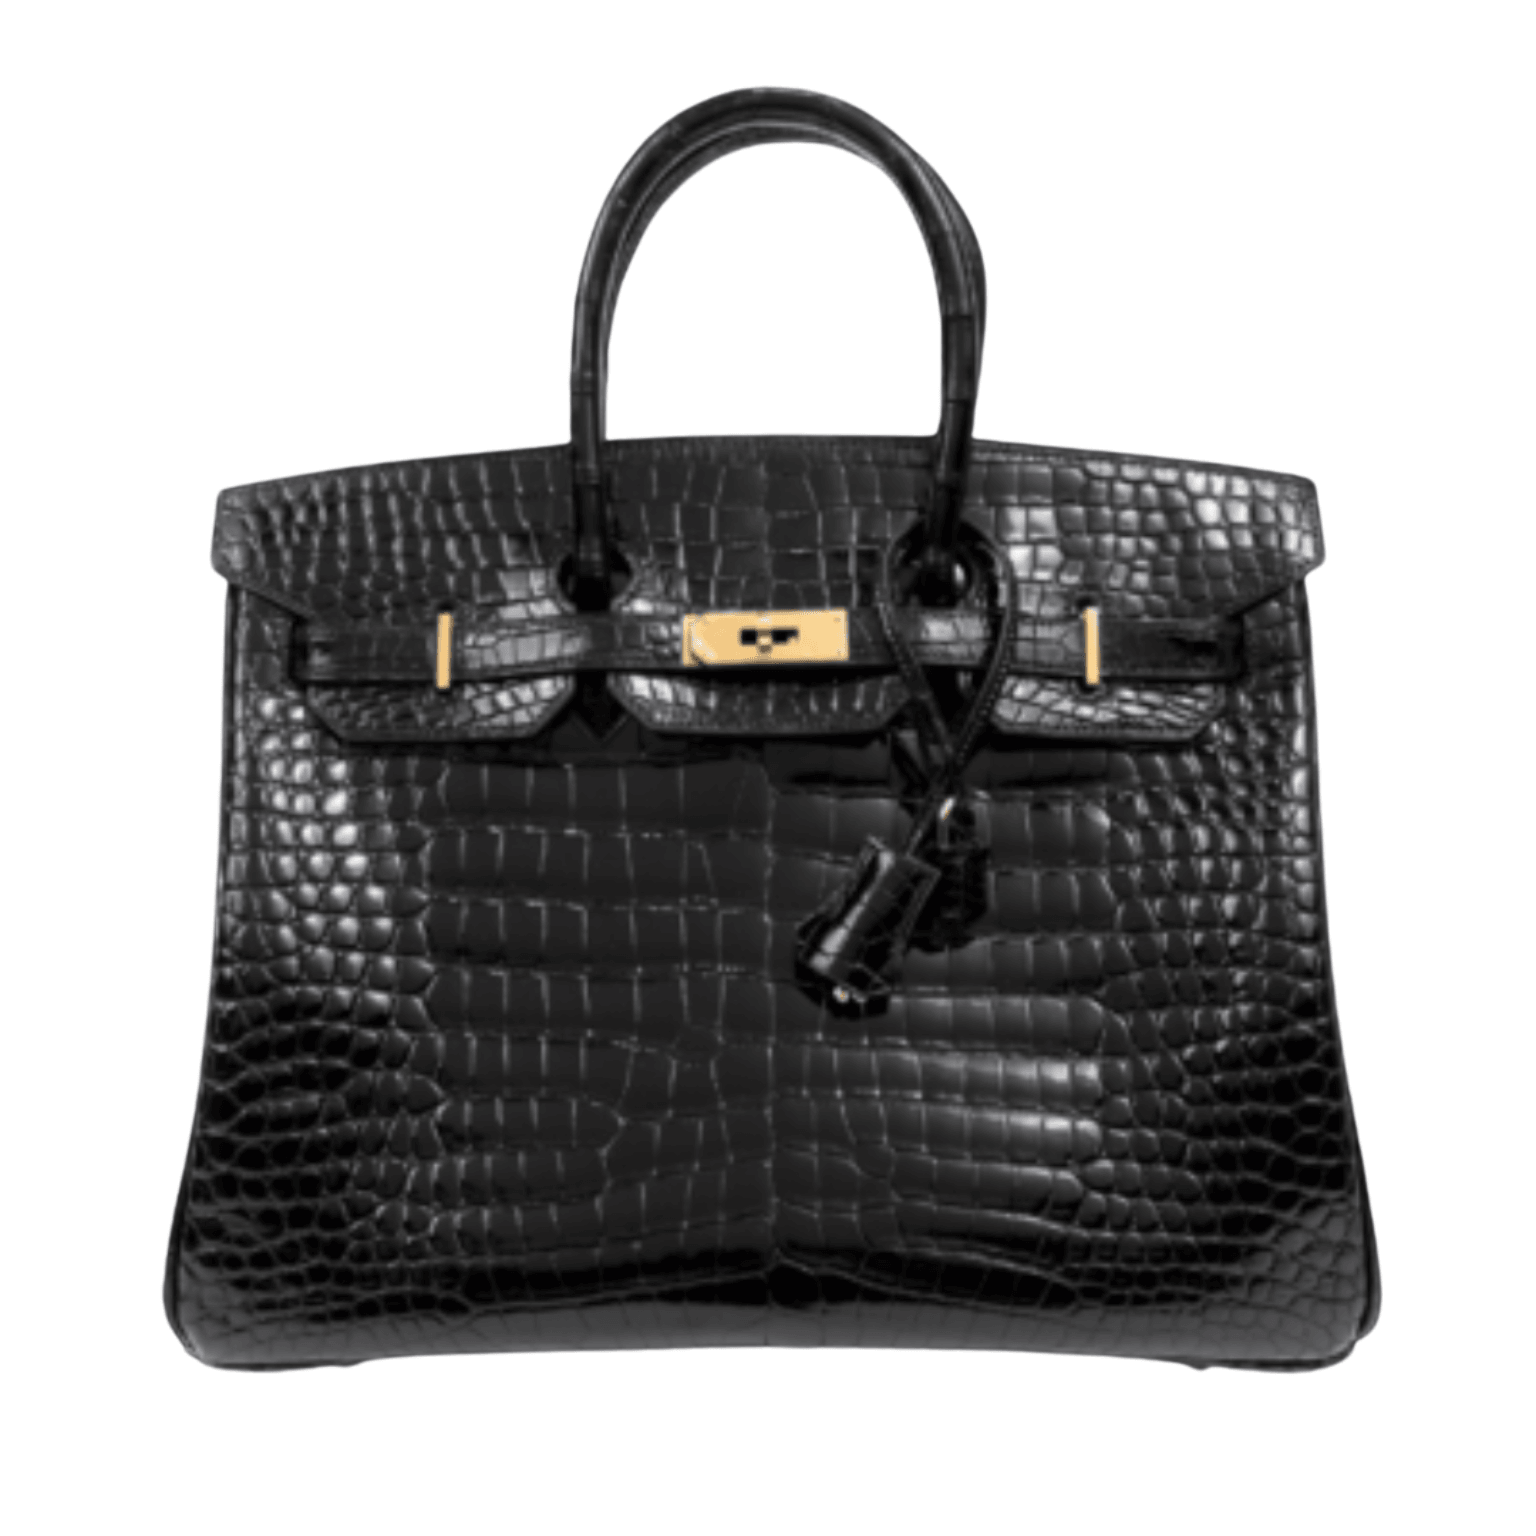 Hermès Black Leather Aline Mini Bag – Only Authentics